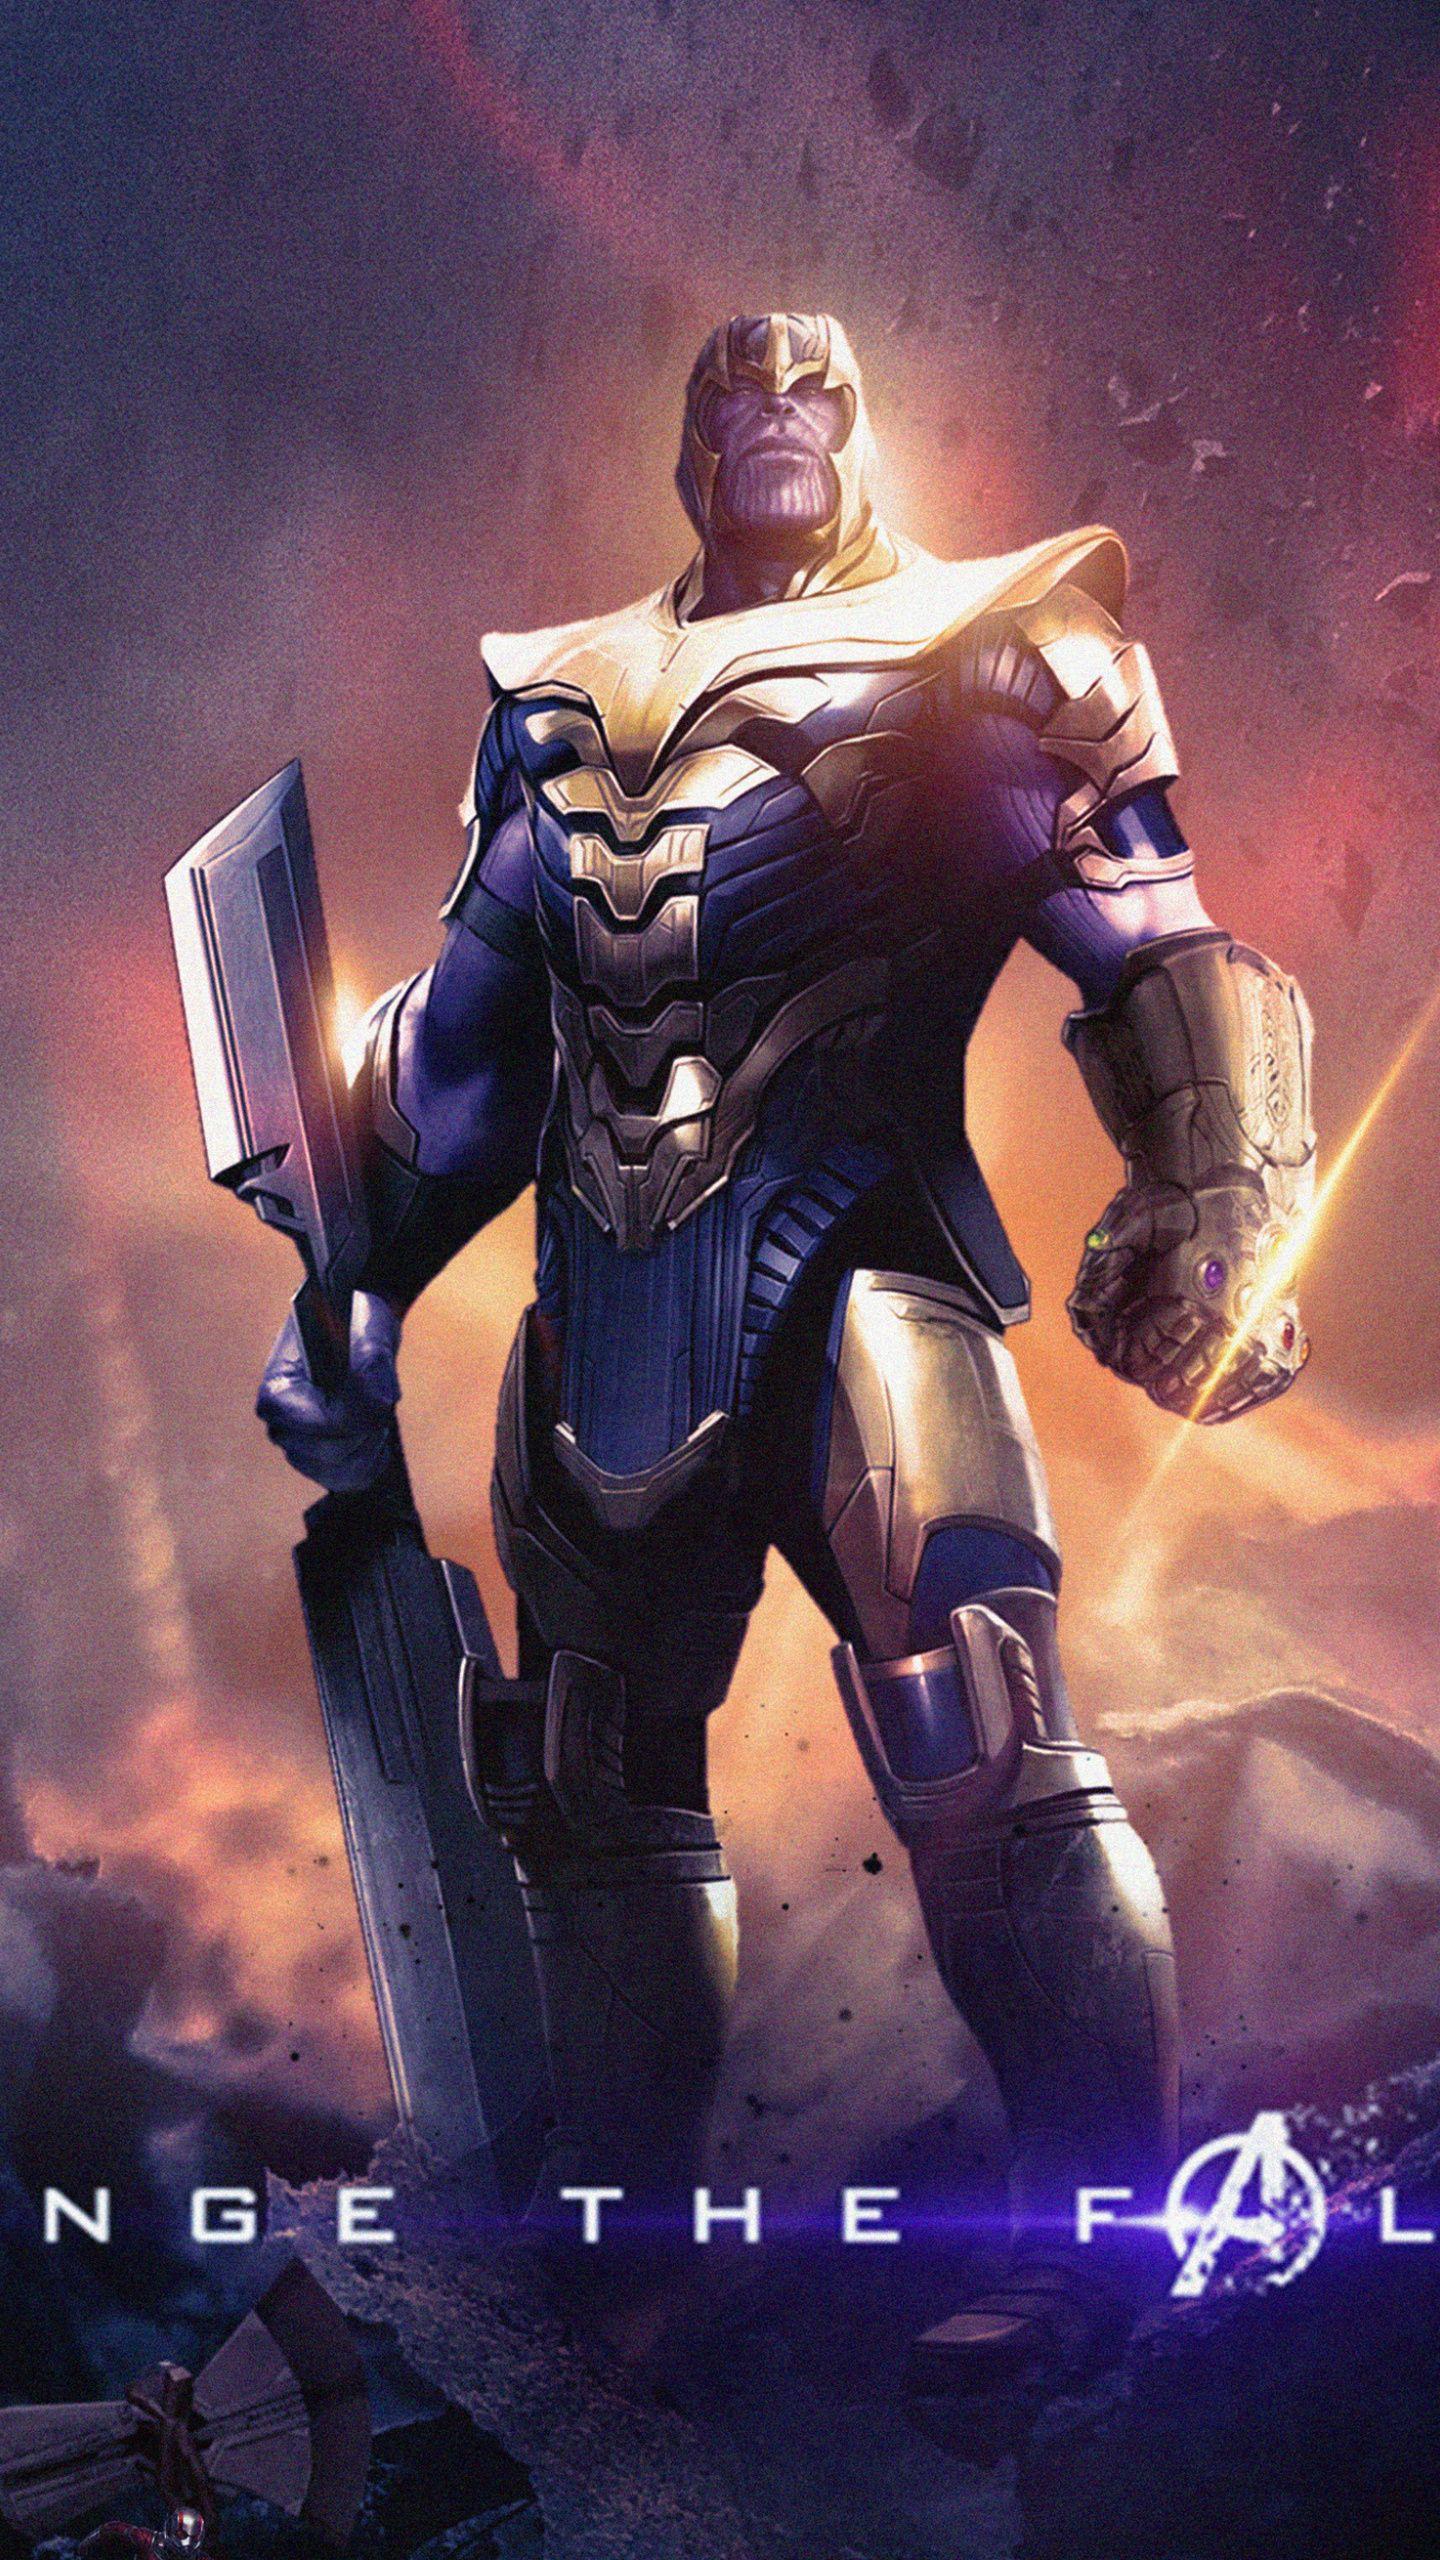 Thanos, Avengers: Endgame, villain wallpaper,. Marvel superhero posters, Marvel superheroes, Marvel villains